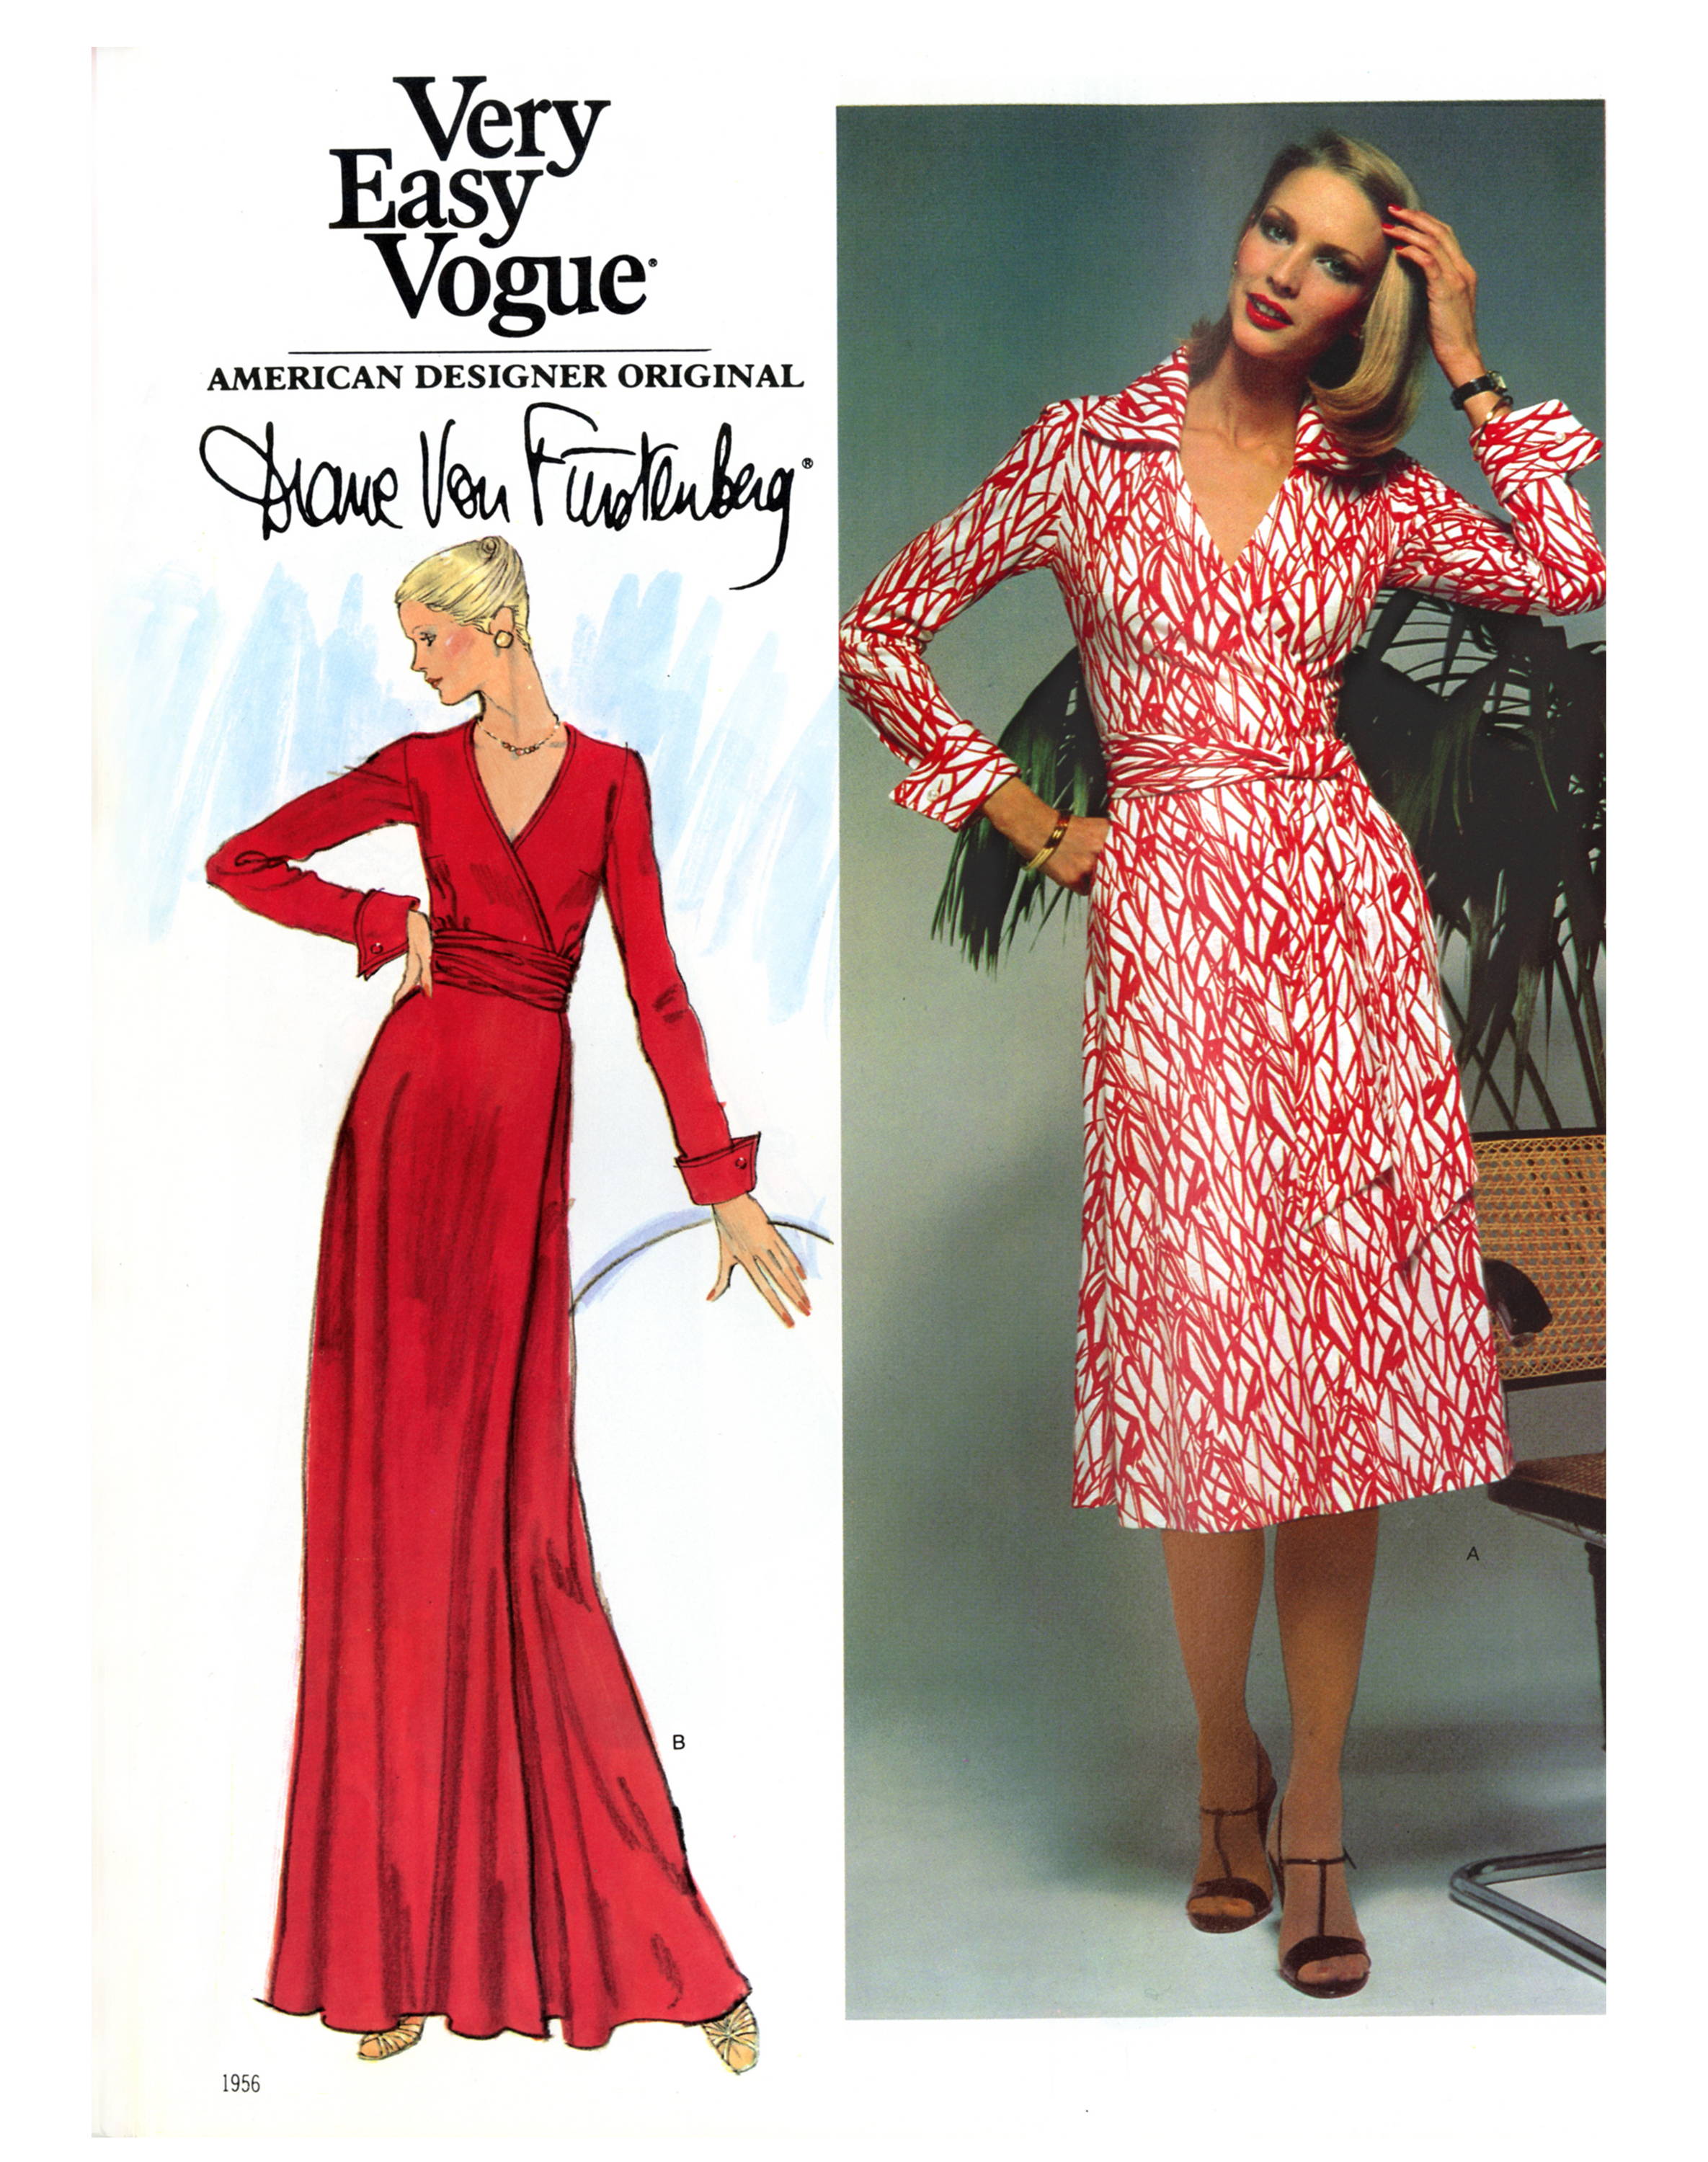 Very Easy Vogue American Designer Original by Diane von Furstenberg